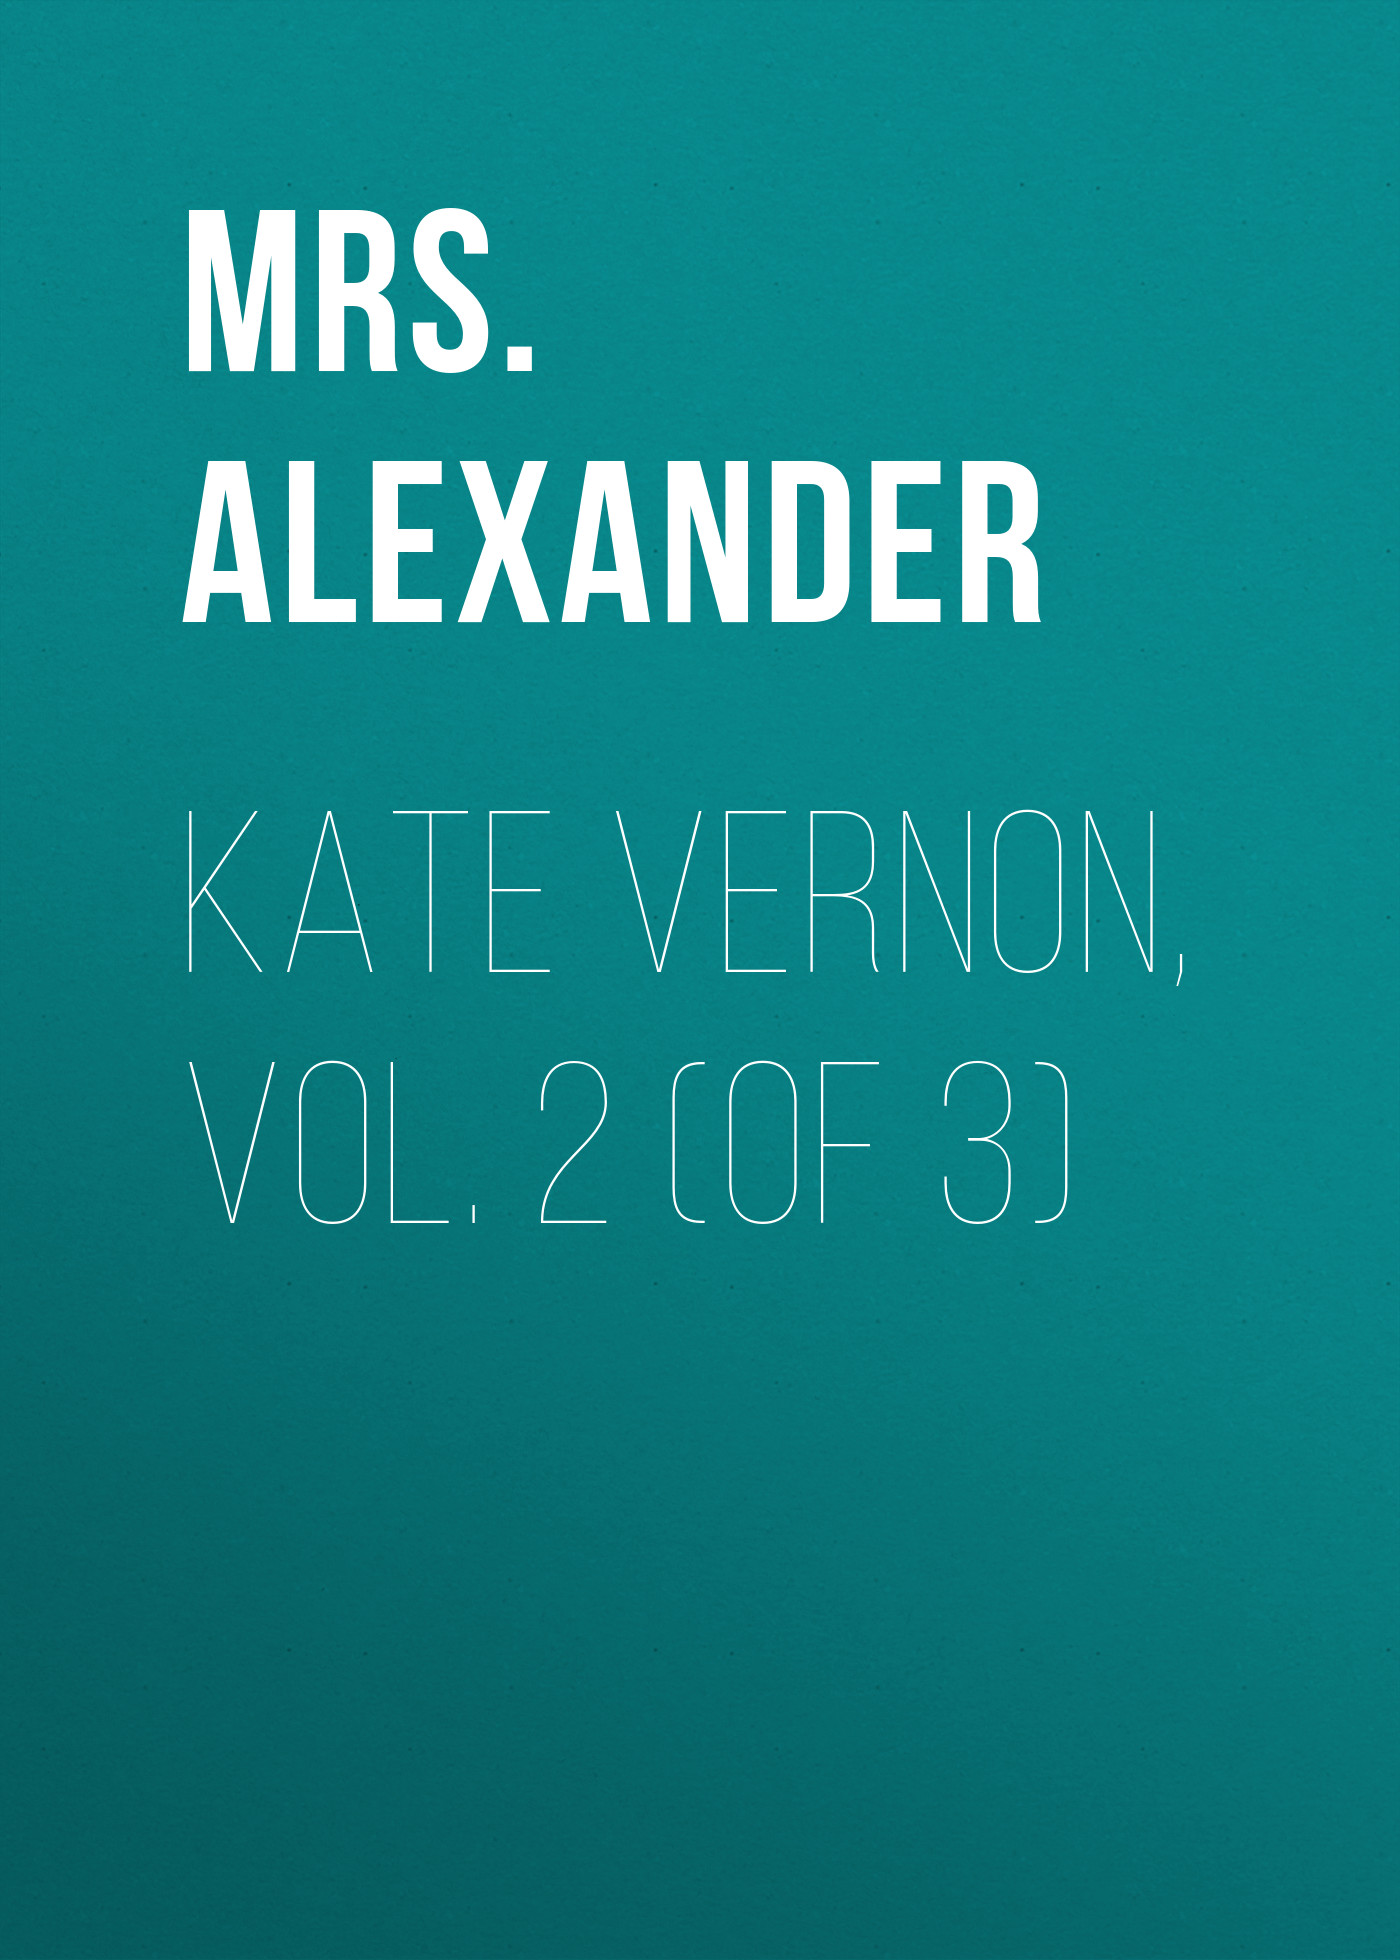 Книга Kate Vernon, Vol. 2 (of 3) из серии , созданная Mrs. Alexander, может относится к жанру Зарубежная старинная литература, Зарубежная классика, Иностранные языки. Стоимость электронной книги Kate Vernon, Vol. 2 (of 3) с идентификатором 24165452 составляет 0 руб.